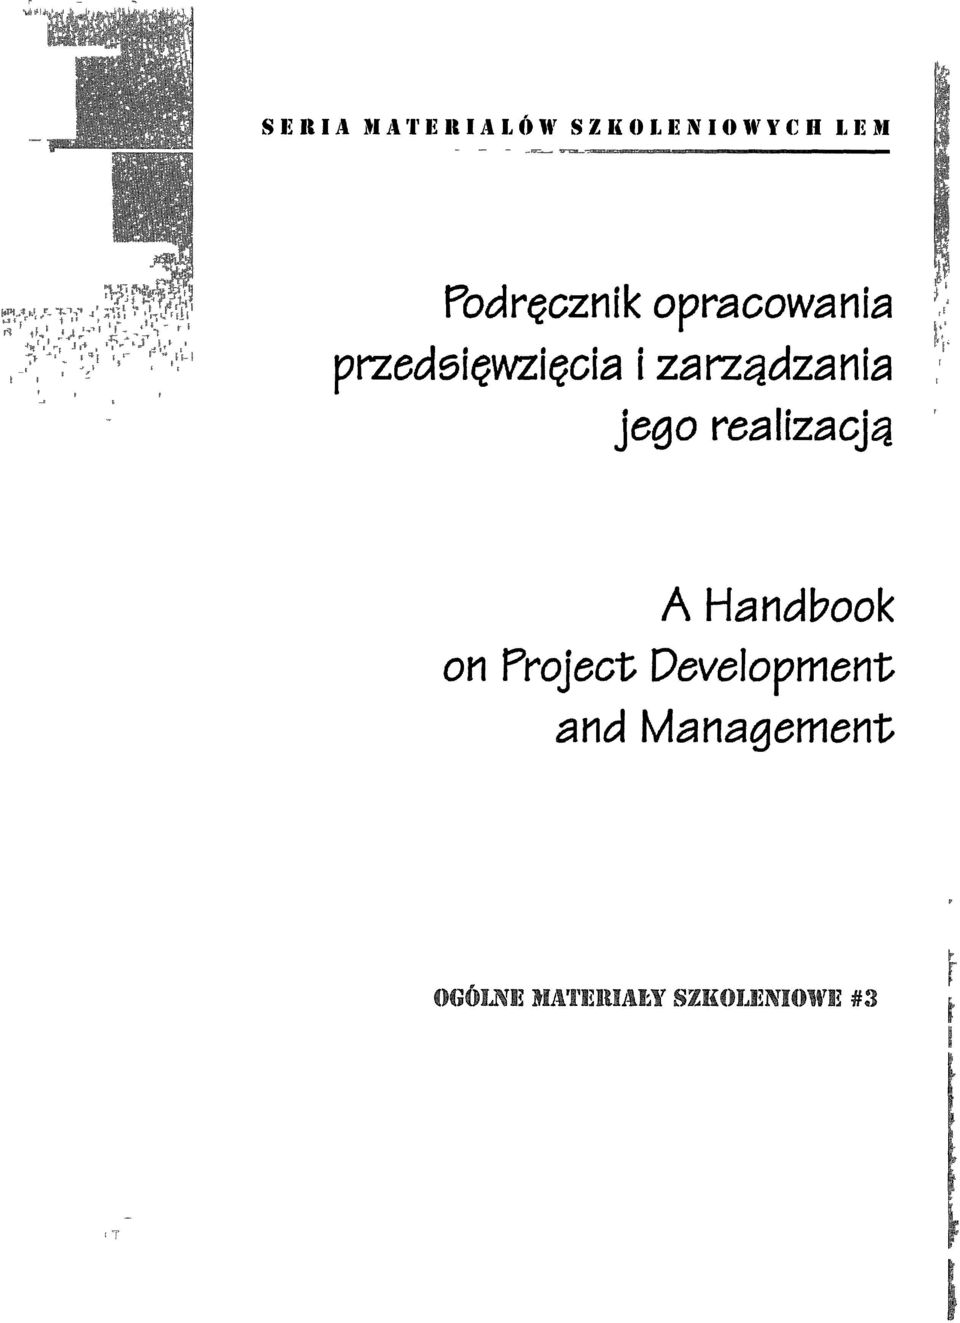 zarz~dzanla Jego realizacjti realizacją, ' T A Handbook on Project Development and